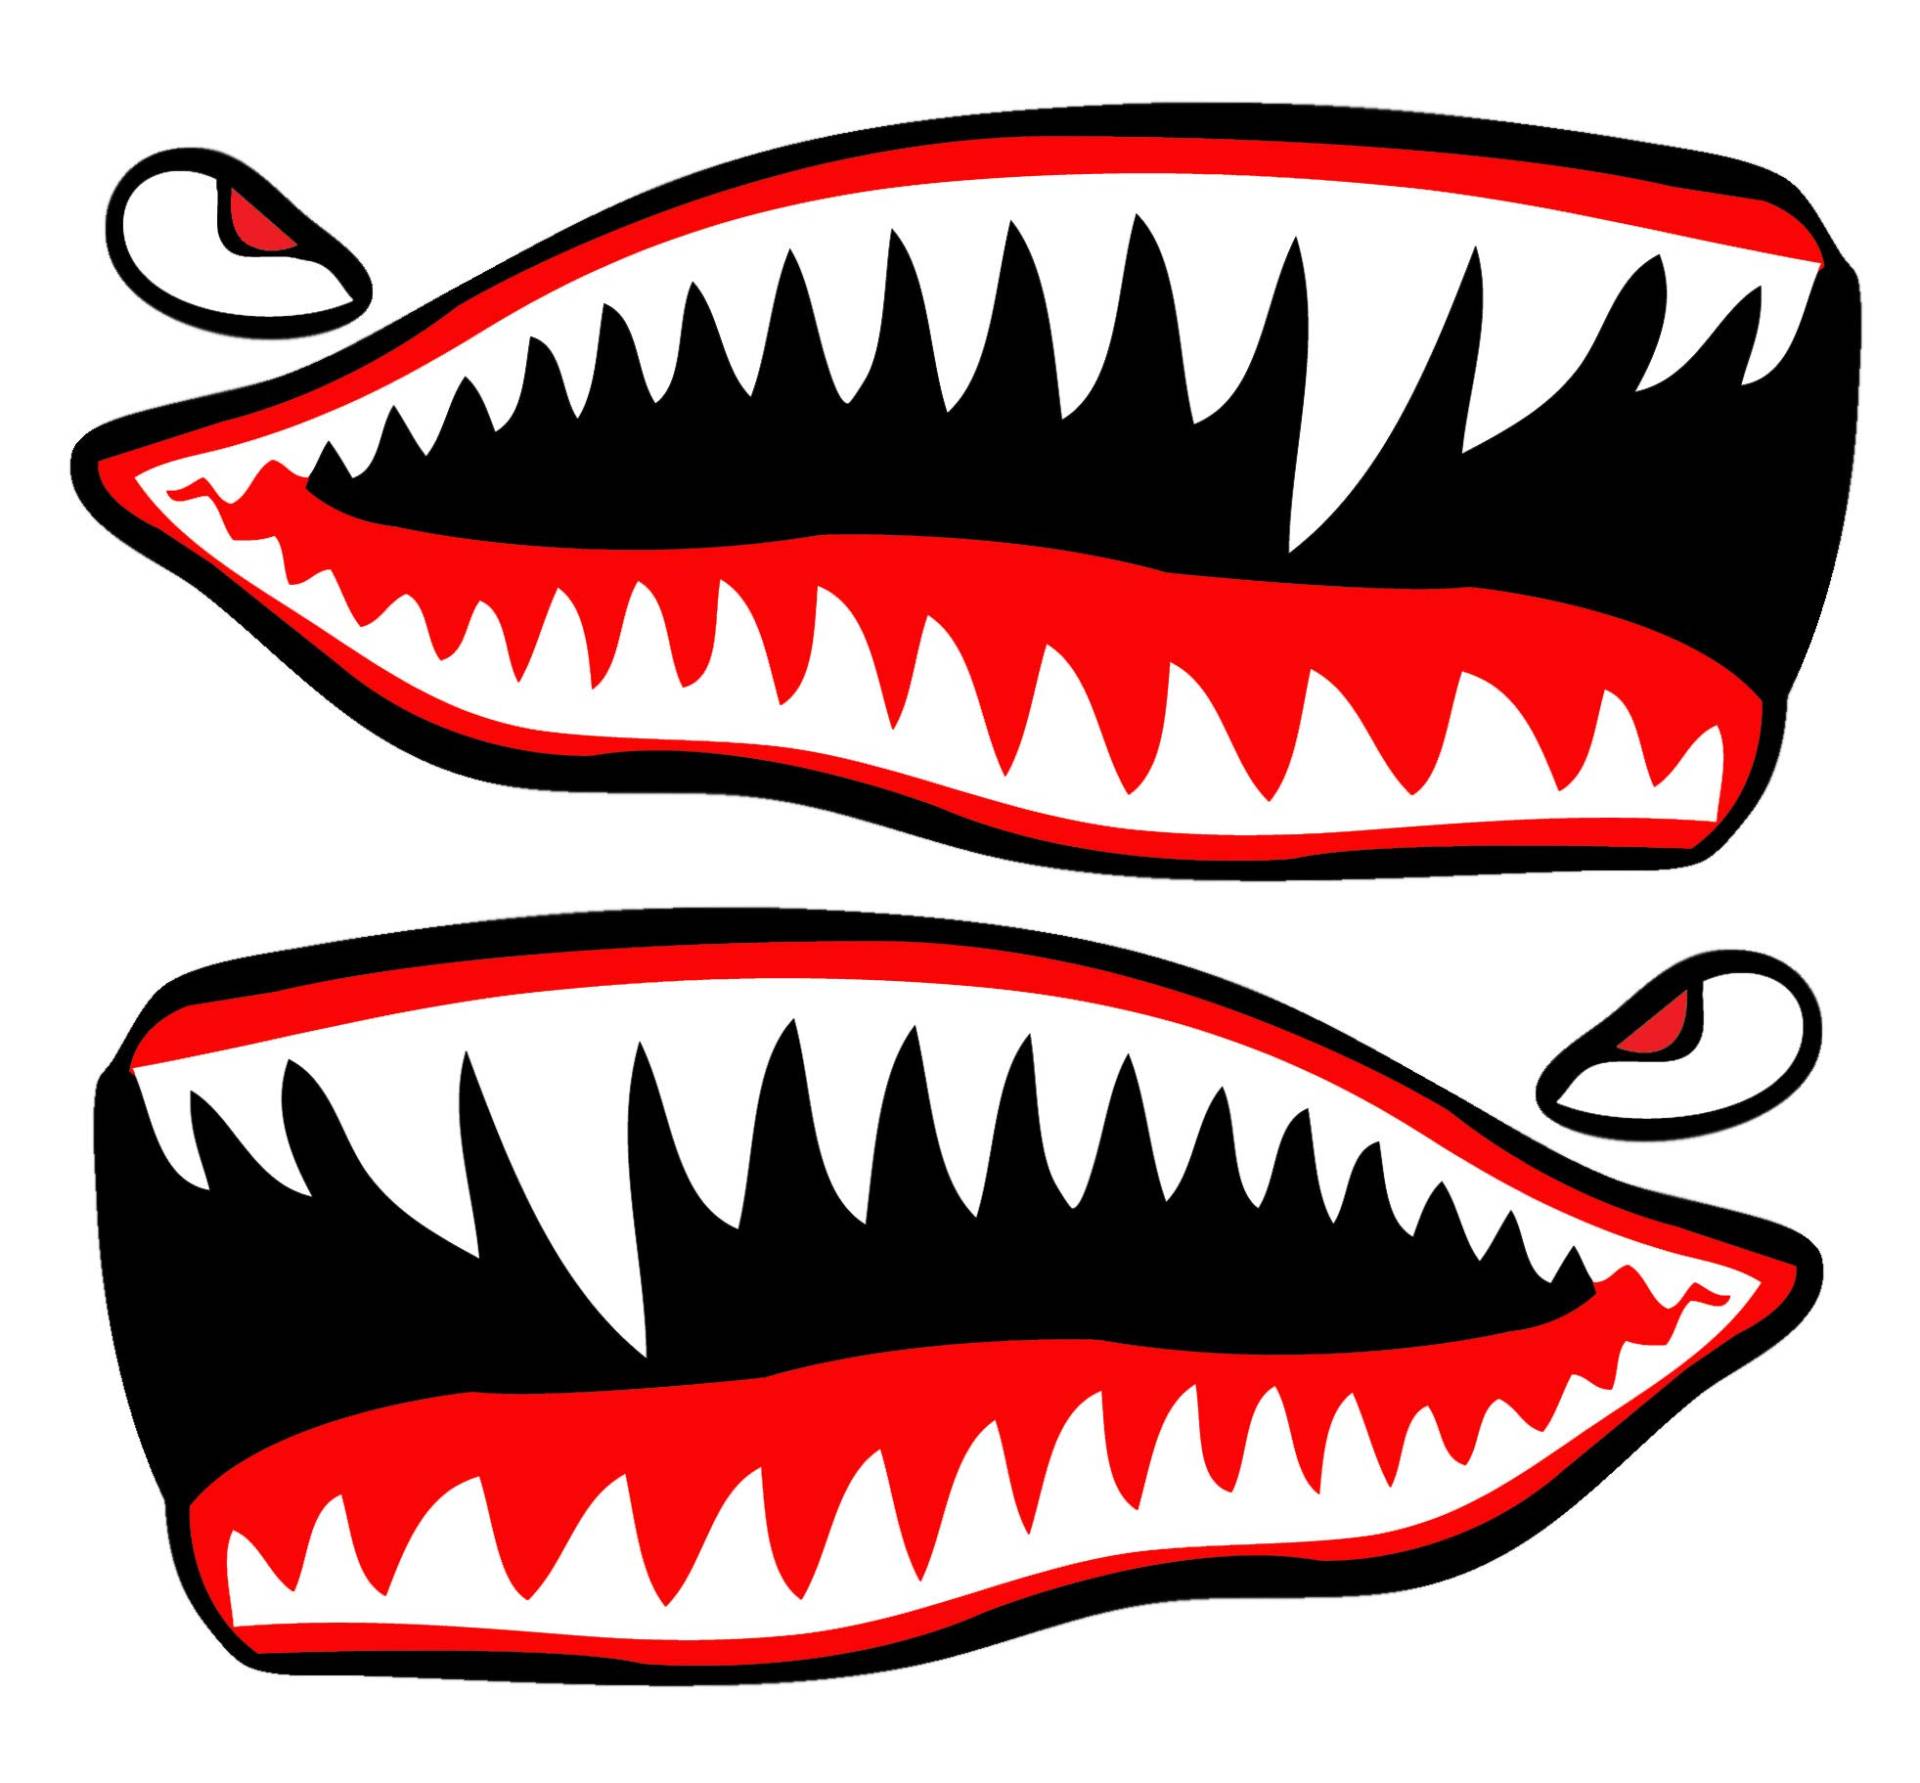 SkinoEu® 2 Stück Vinyl Aufkleber Autoaufkleber Rot Haifischmaul Zähne Haifisch Shark Teeth Fischen Meerestier Fischerboot Stickers Spiegel Auto Moto Motorrad Fahrrad Helm Fenster Tür Tuning B 64 von SkinoEu